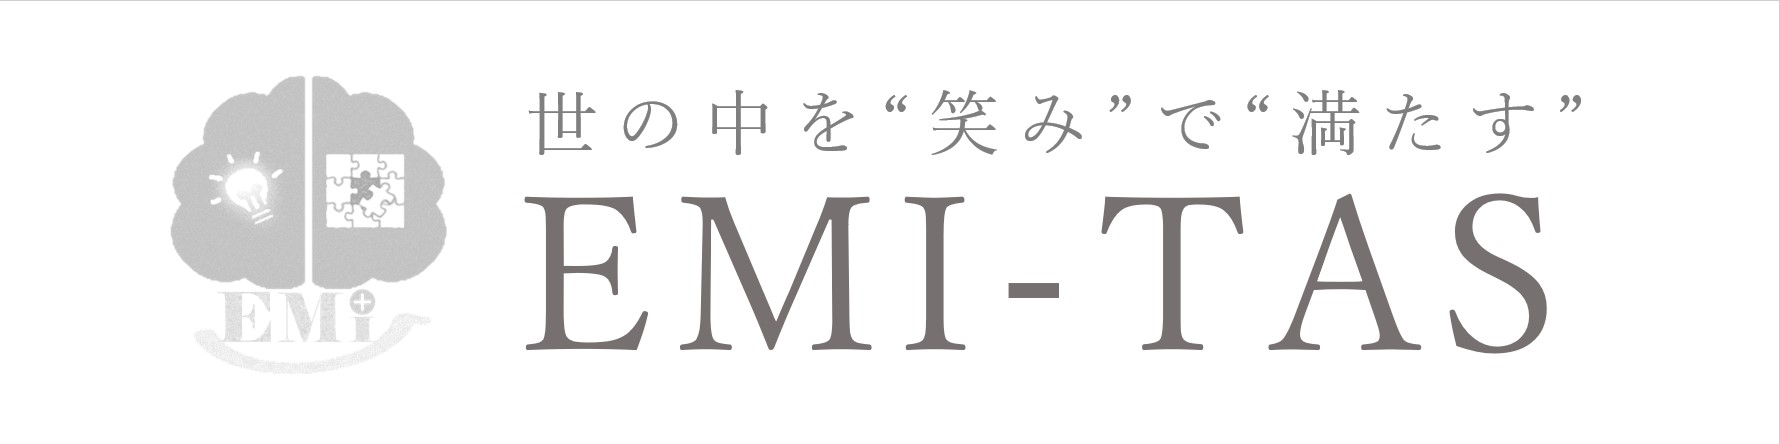 株式会社EMI‐TAS<br />
アンティークレンタル・WEB動画制作<br />
会員制サロンの運営